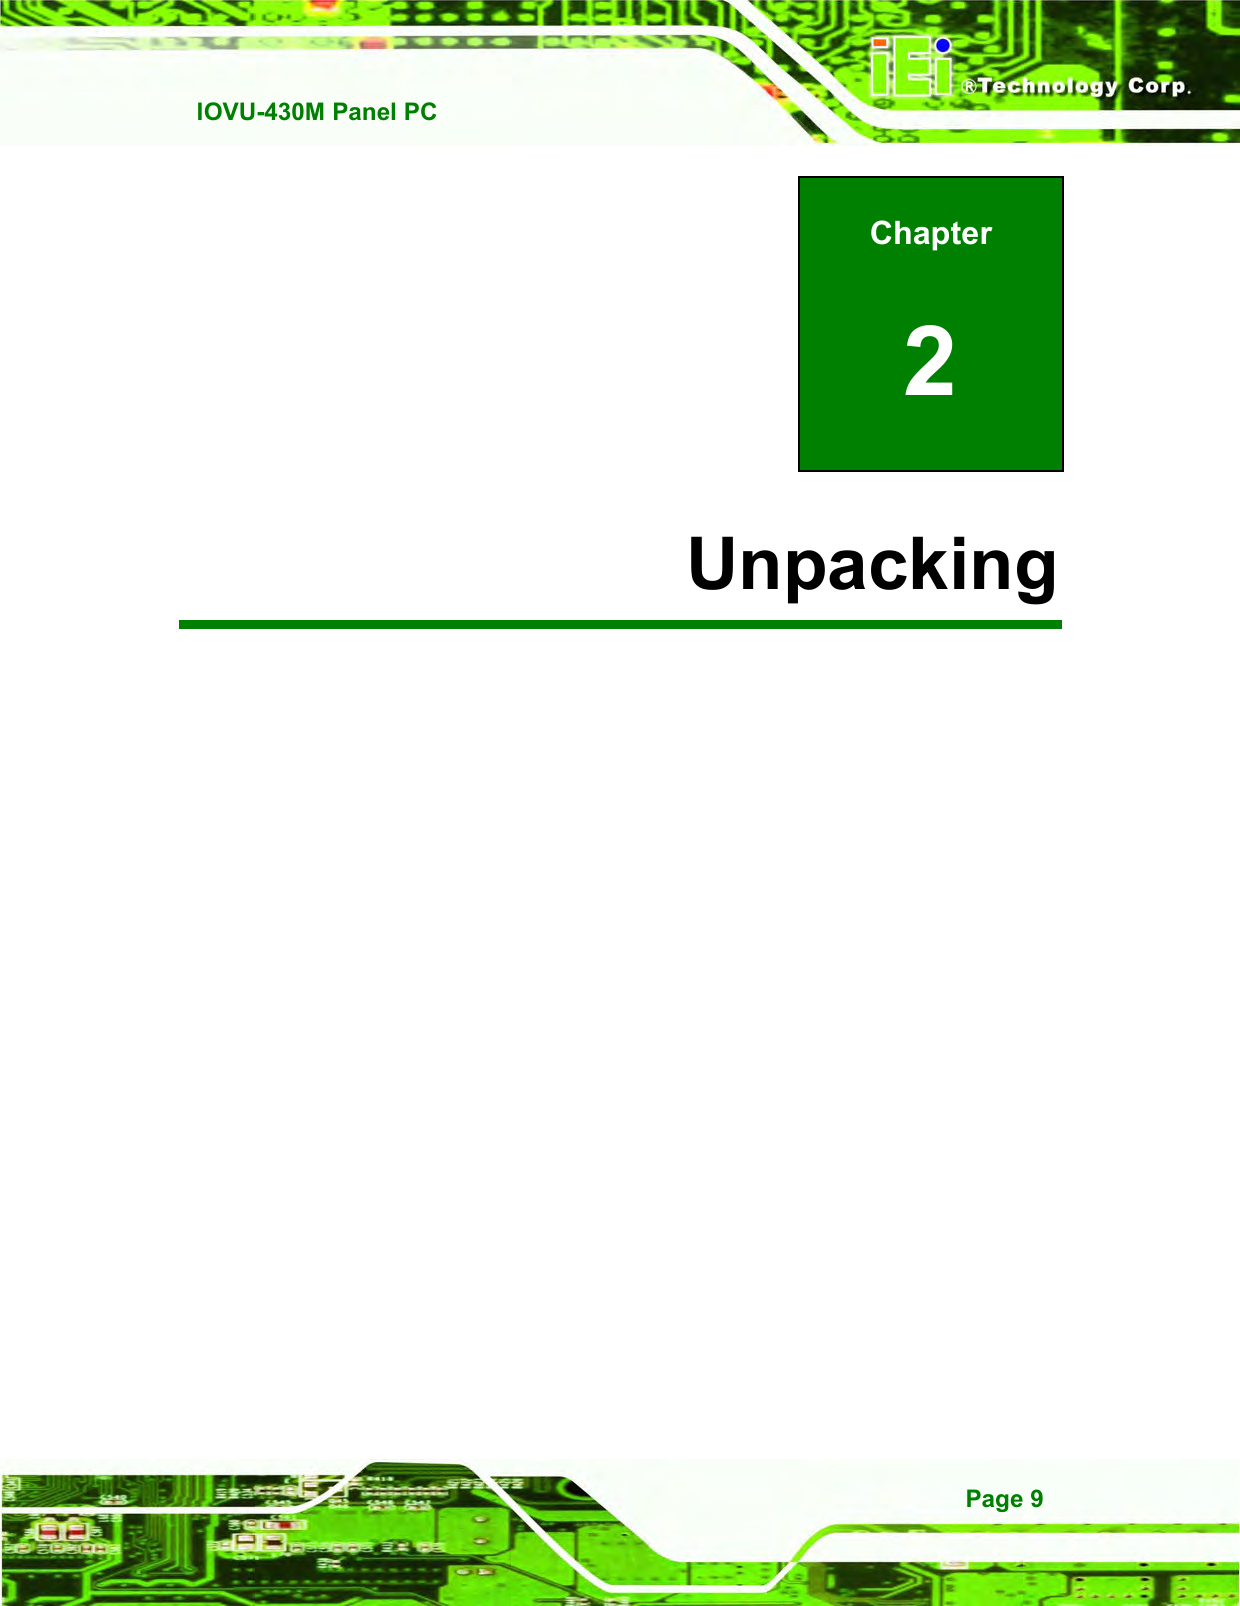   IOVU-430M Panel PC Page 9 Chapter 2 2 Unpacking 